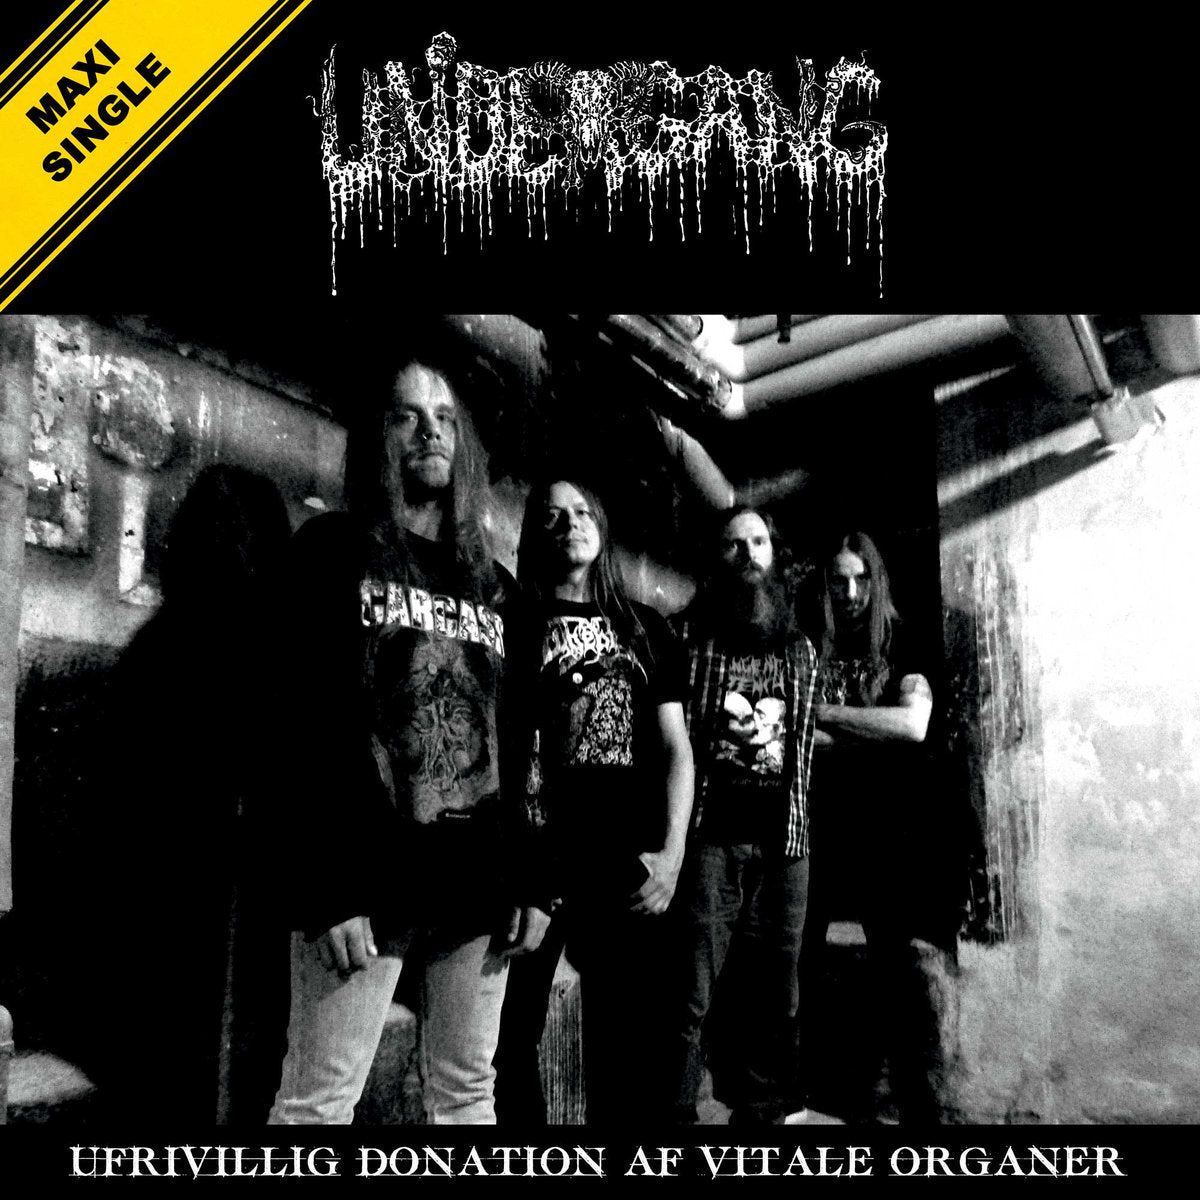 UNDERGANG - UFRIVILLIG DONATION AF VITALE ORGANER Vinyl 12"